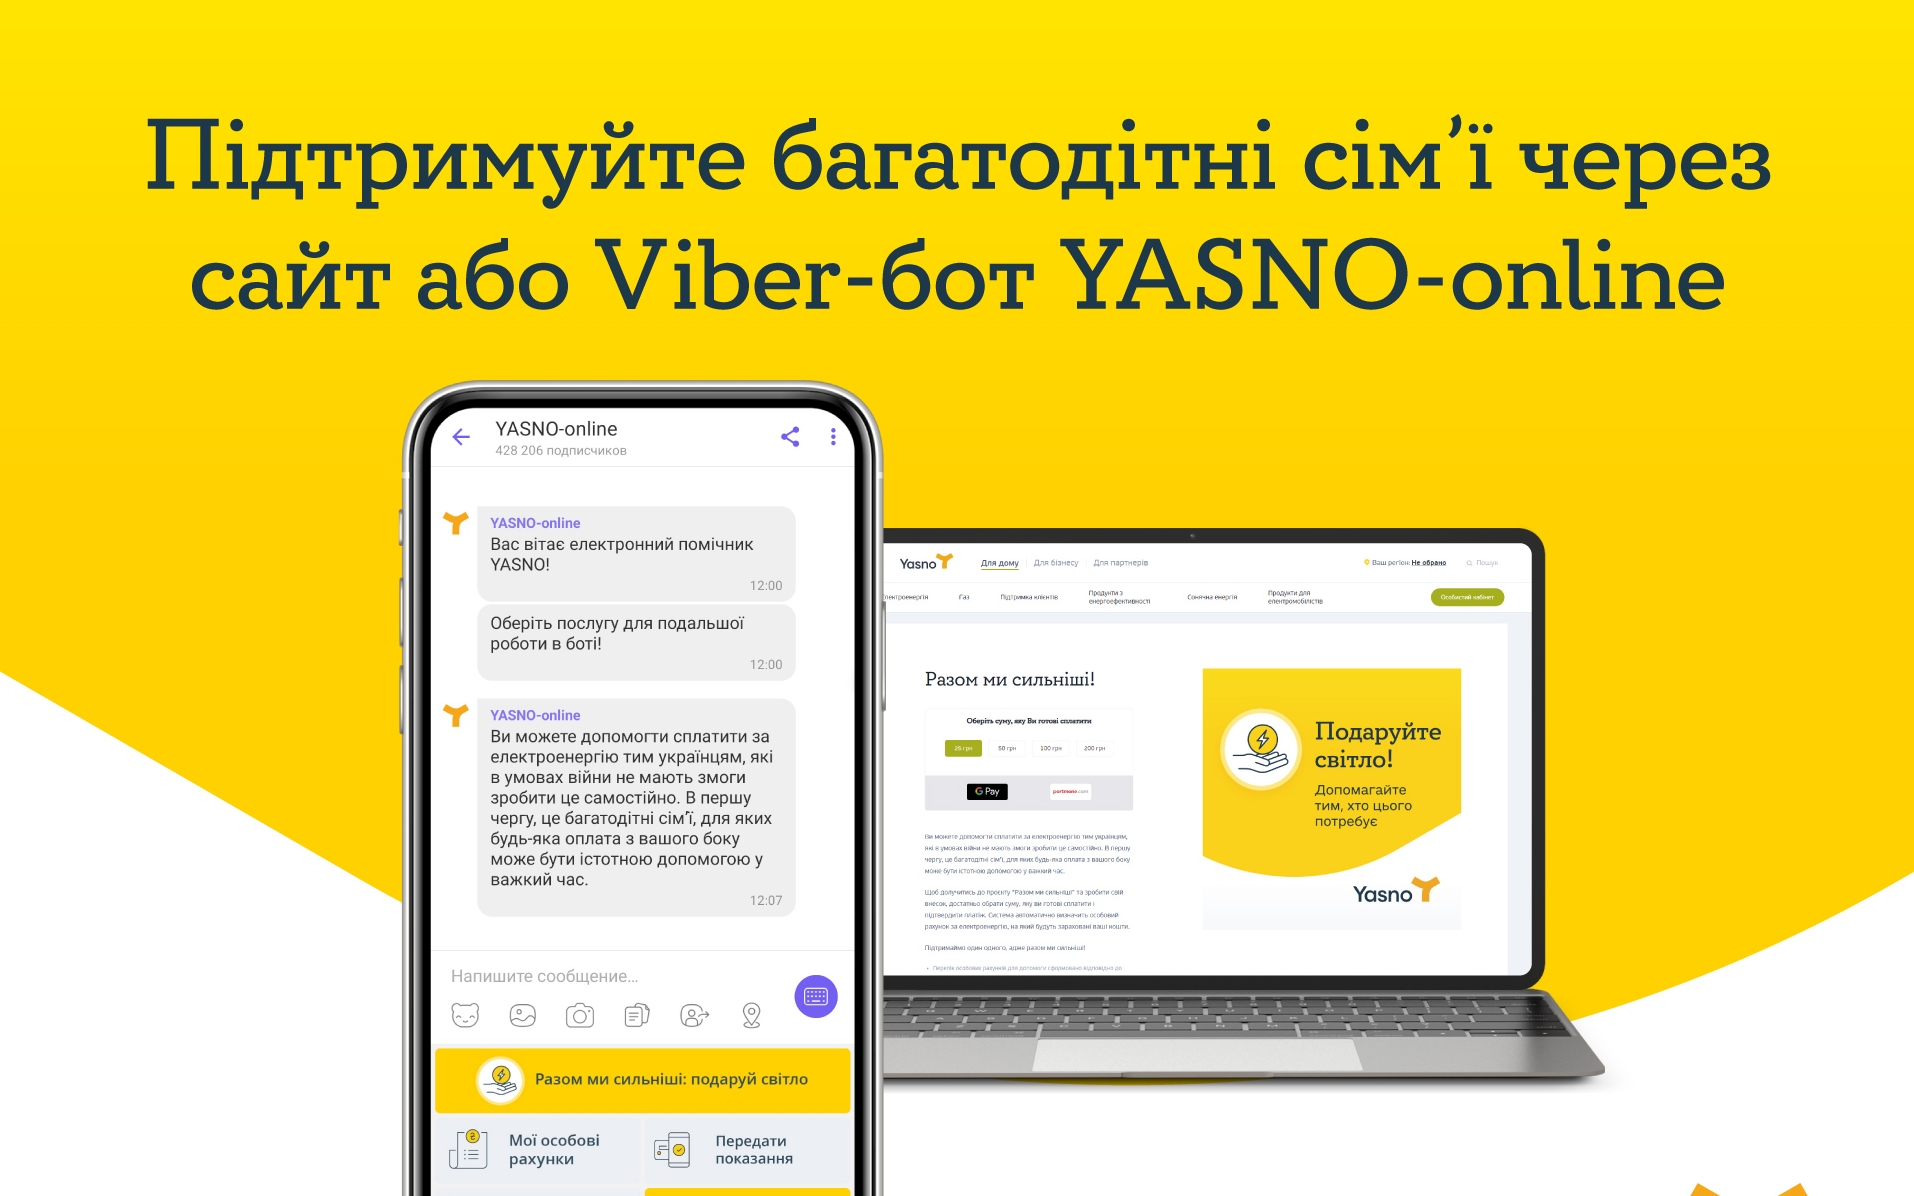 Через Viber-бот YASNO-online можна подарувати світло багатодітним сім’ям